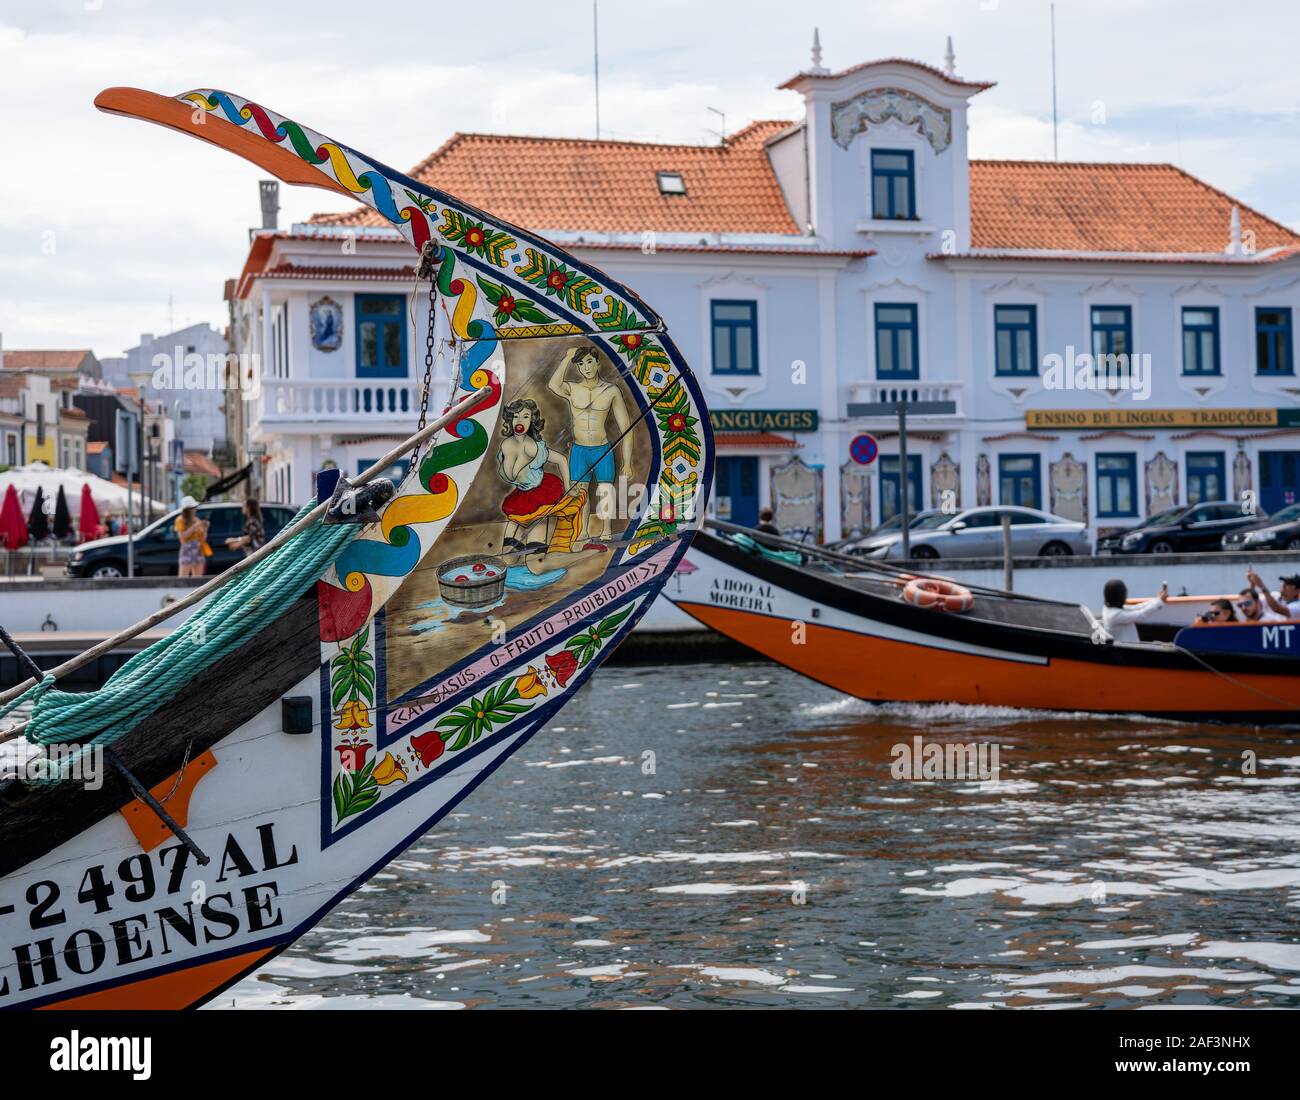 Aveiro, Portugal - 19 août 2019 : Risque peintures sur le gouvernail du bateau touristique sur les canaux Aveiro Banque D'Images